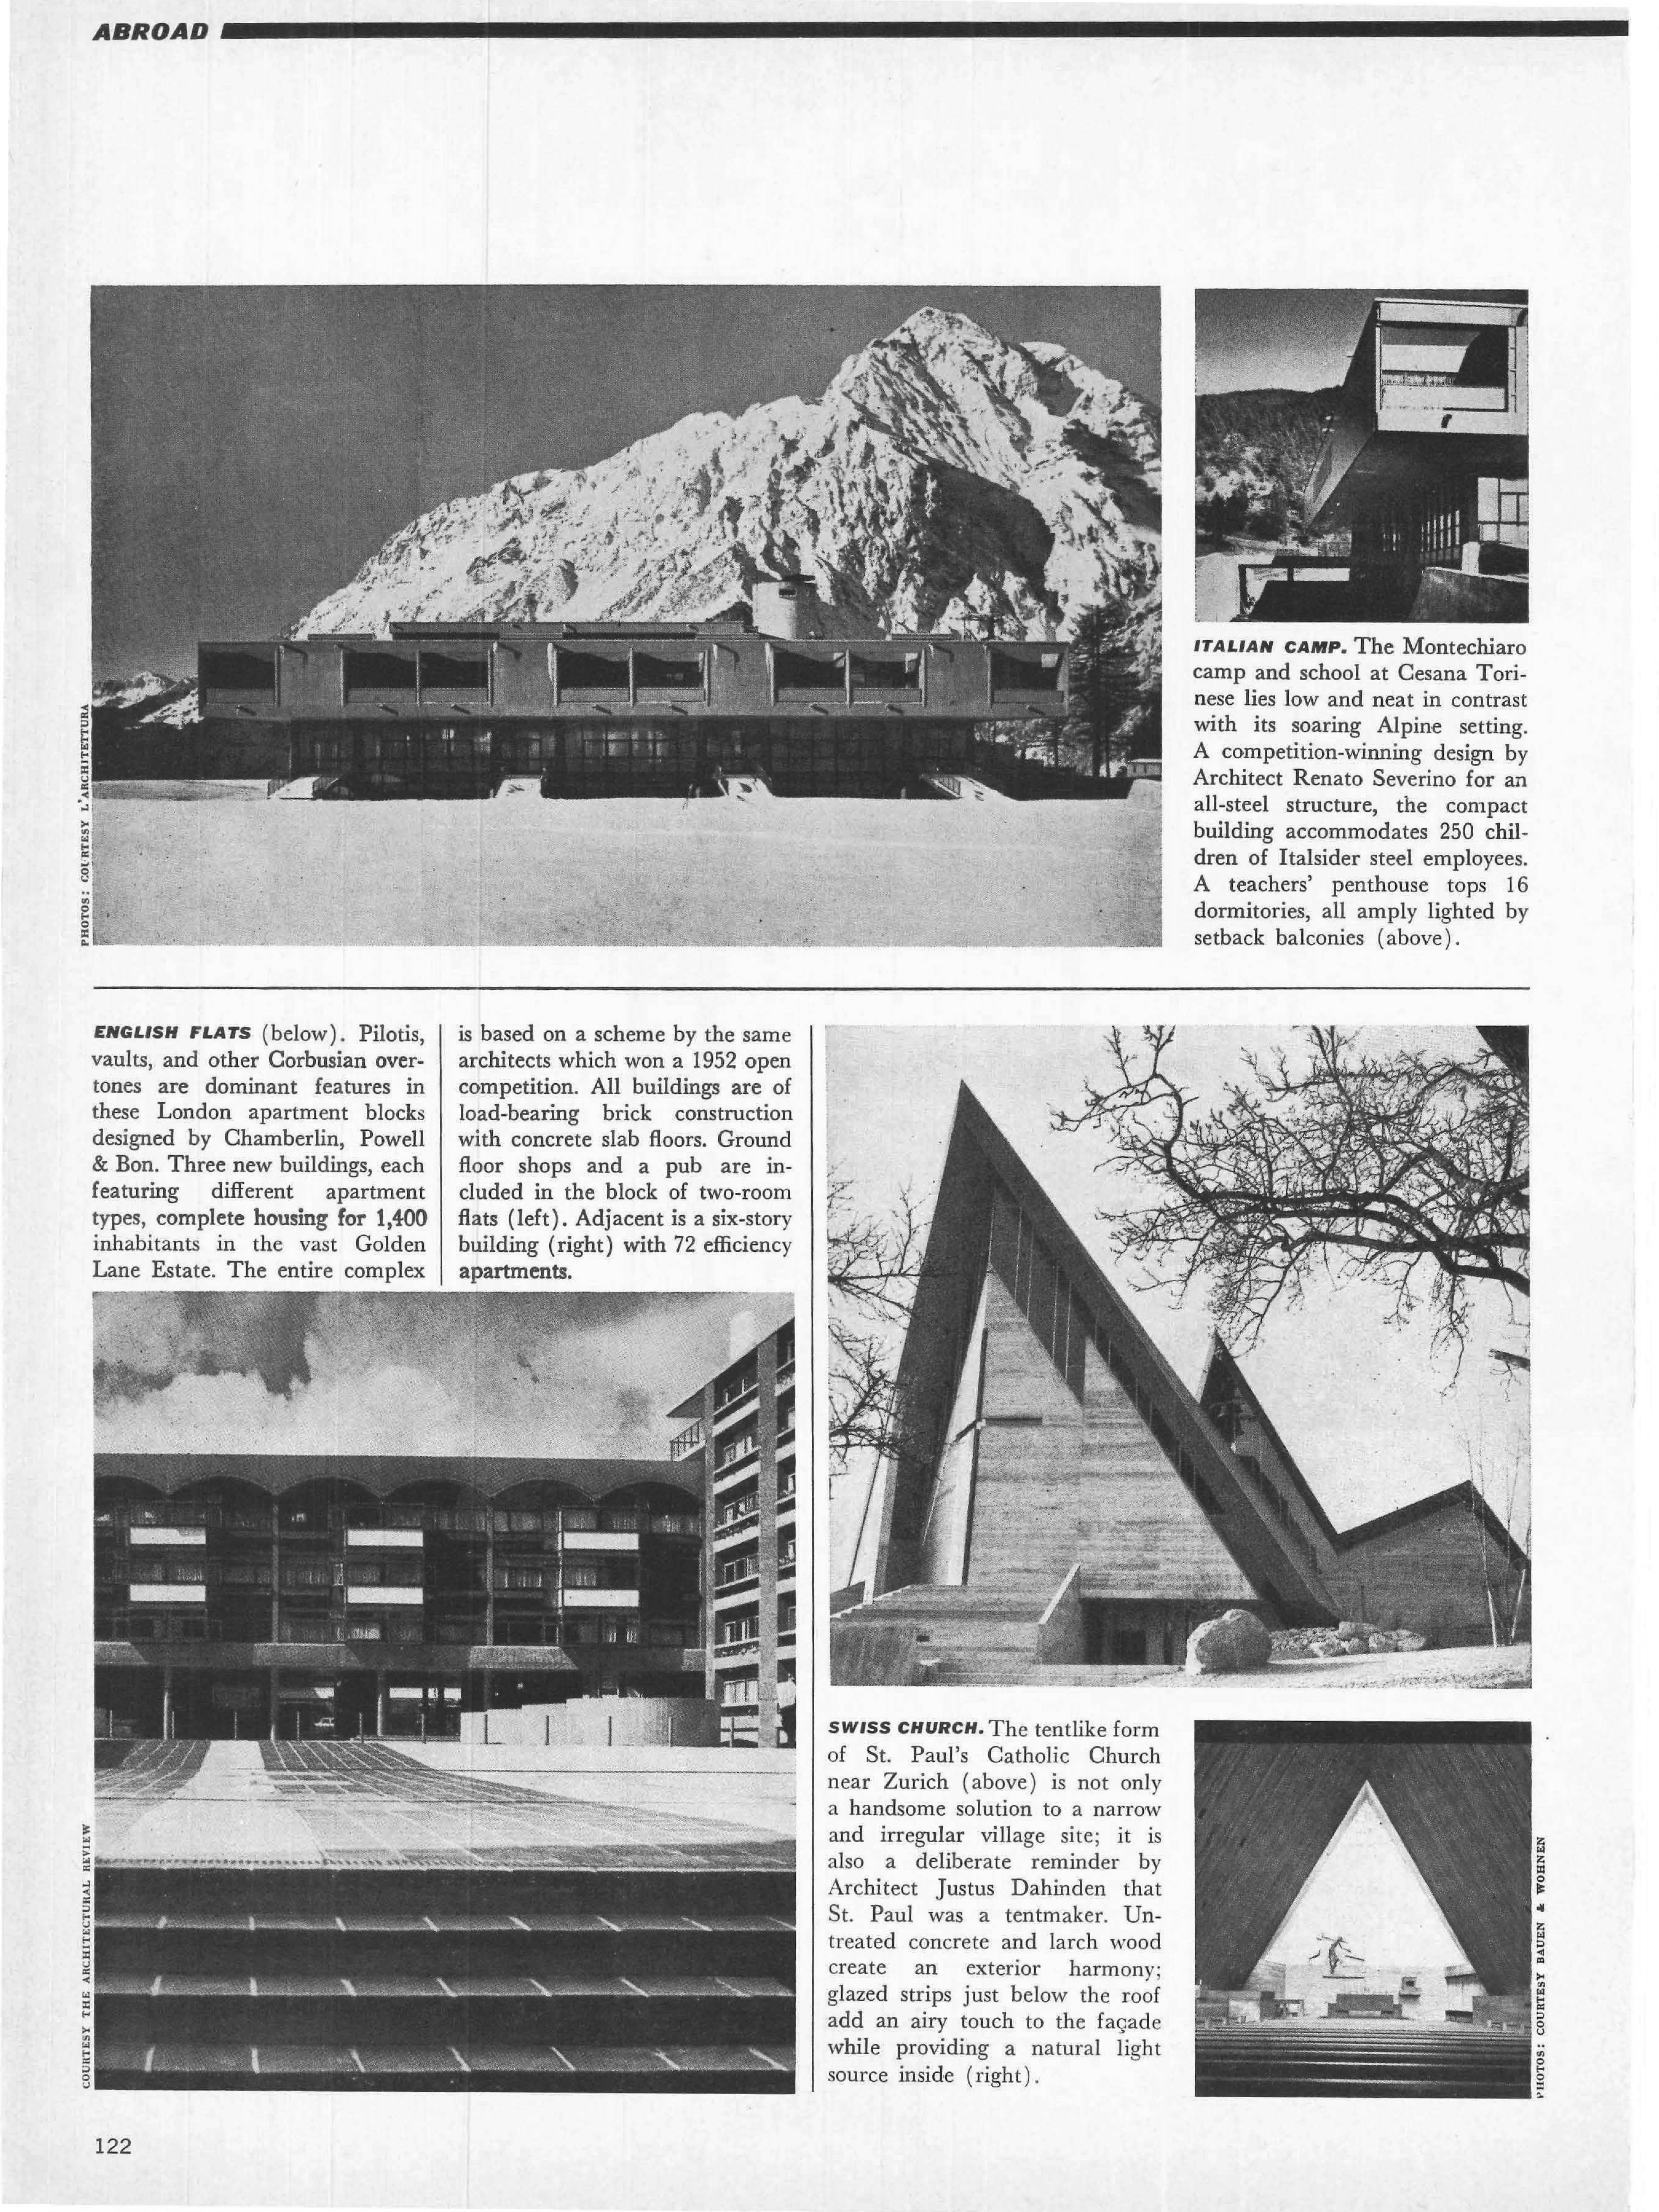 1963. “Italian camp (Montechiaro camp and school, Architect Renato Severino, Cesana Torinese)”, Architectural Forum, 120, no. 10 (October): 122.